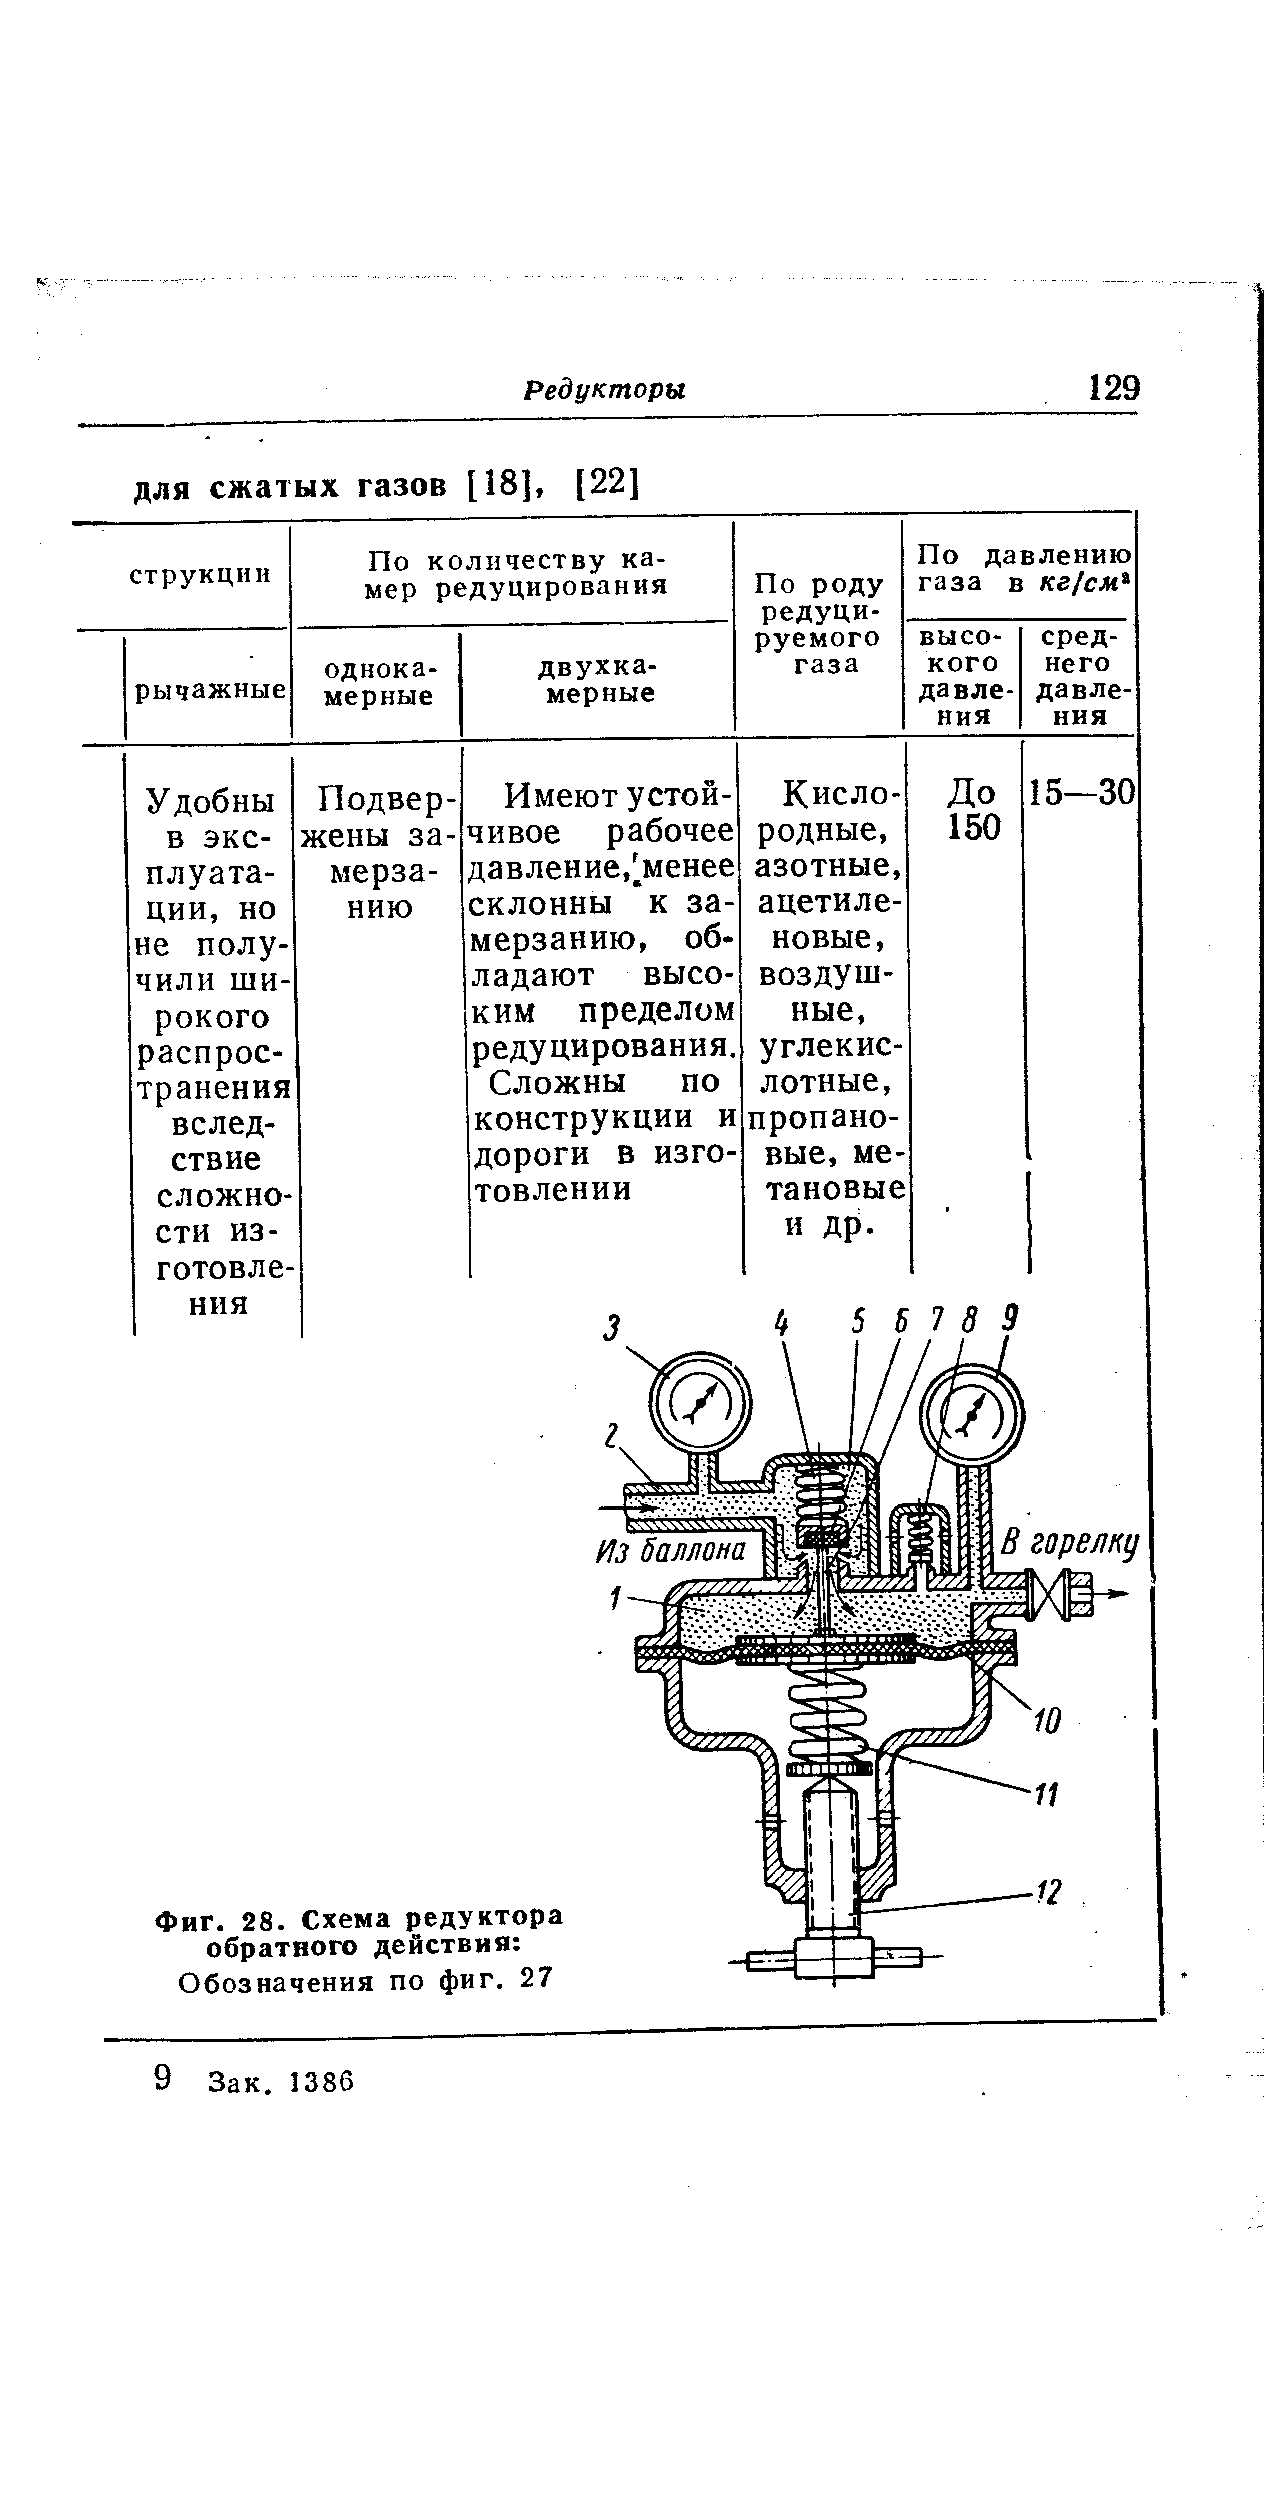 Фиг. 28. Схема редуктора обратного действия Обозначения по фиг. 27
